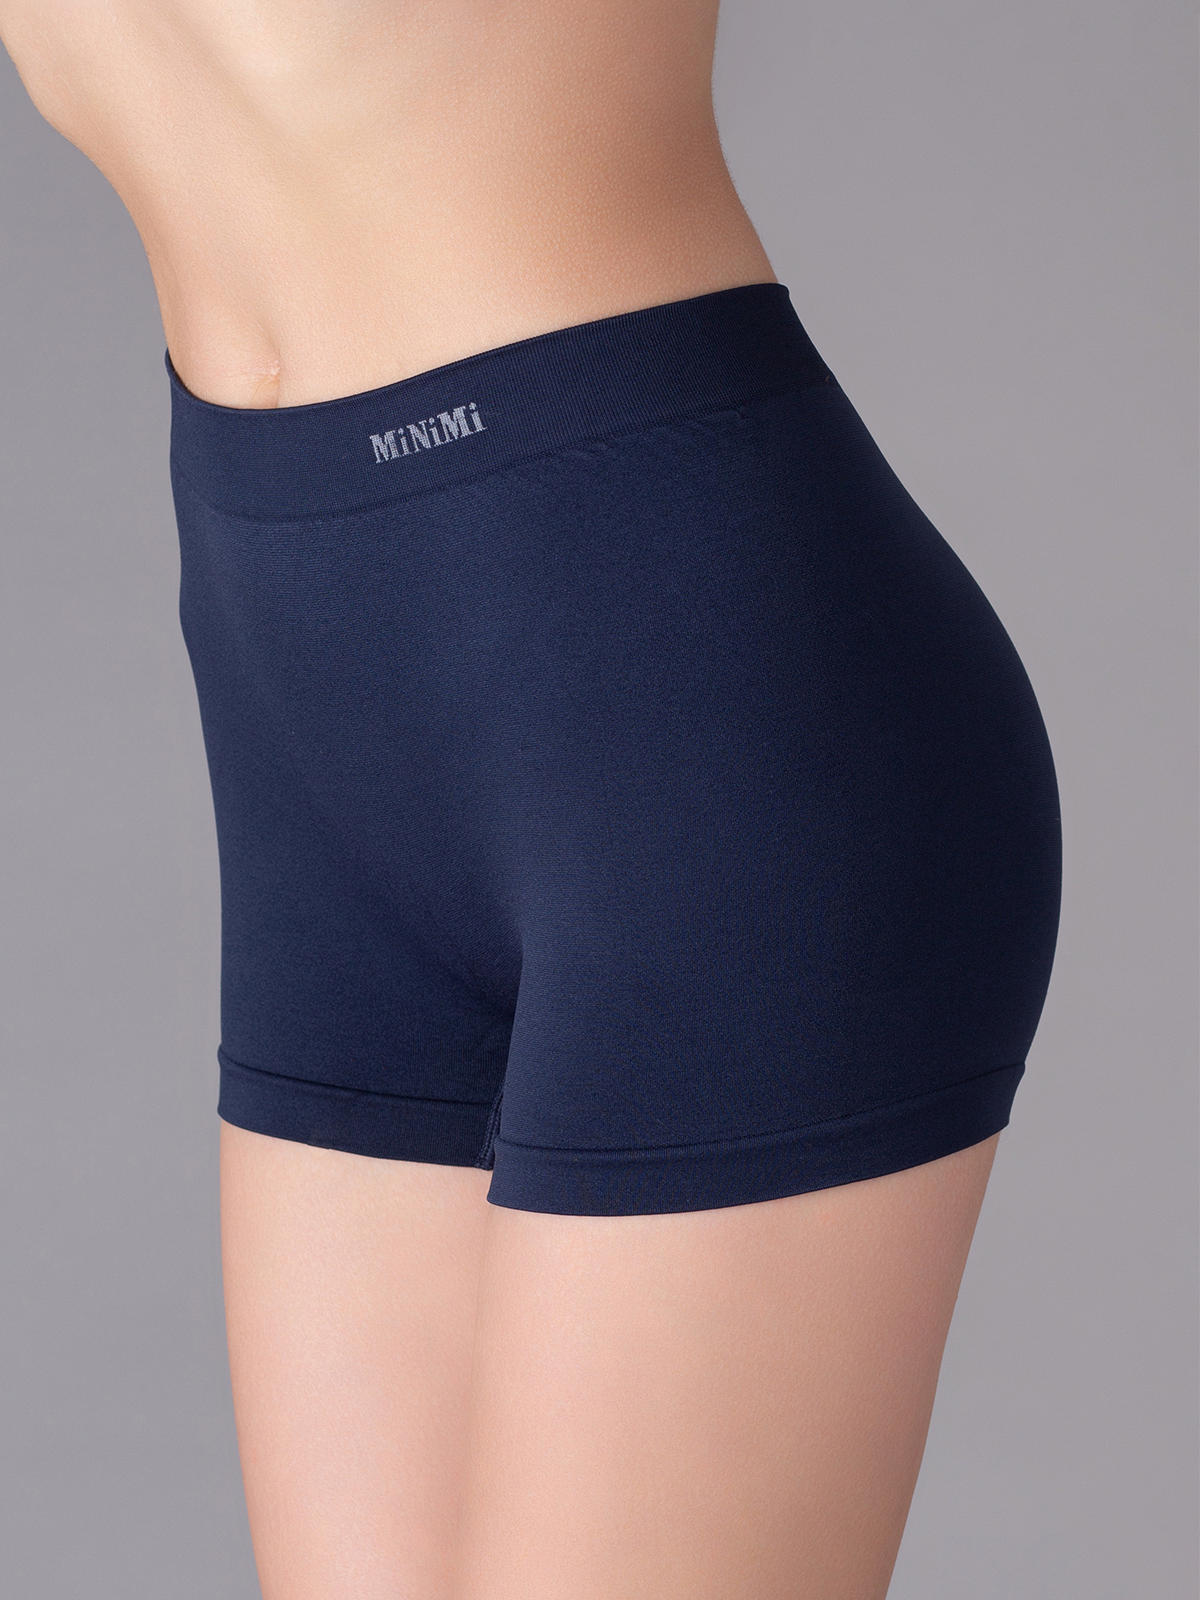 фото Трусы женские minimi basic ma 270 shorts синие l/xl